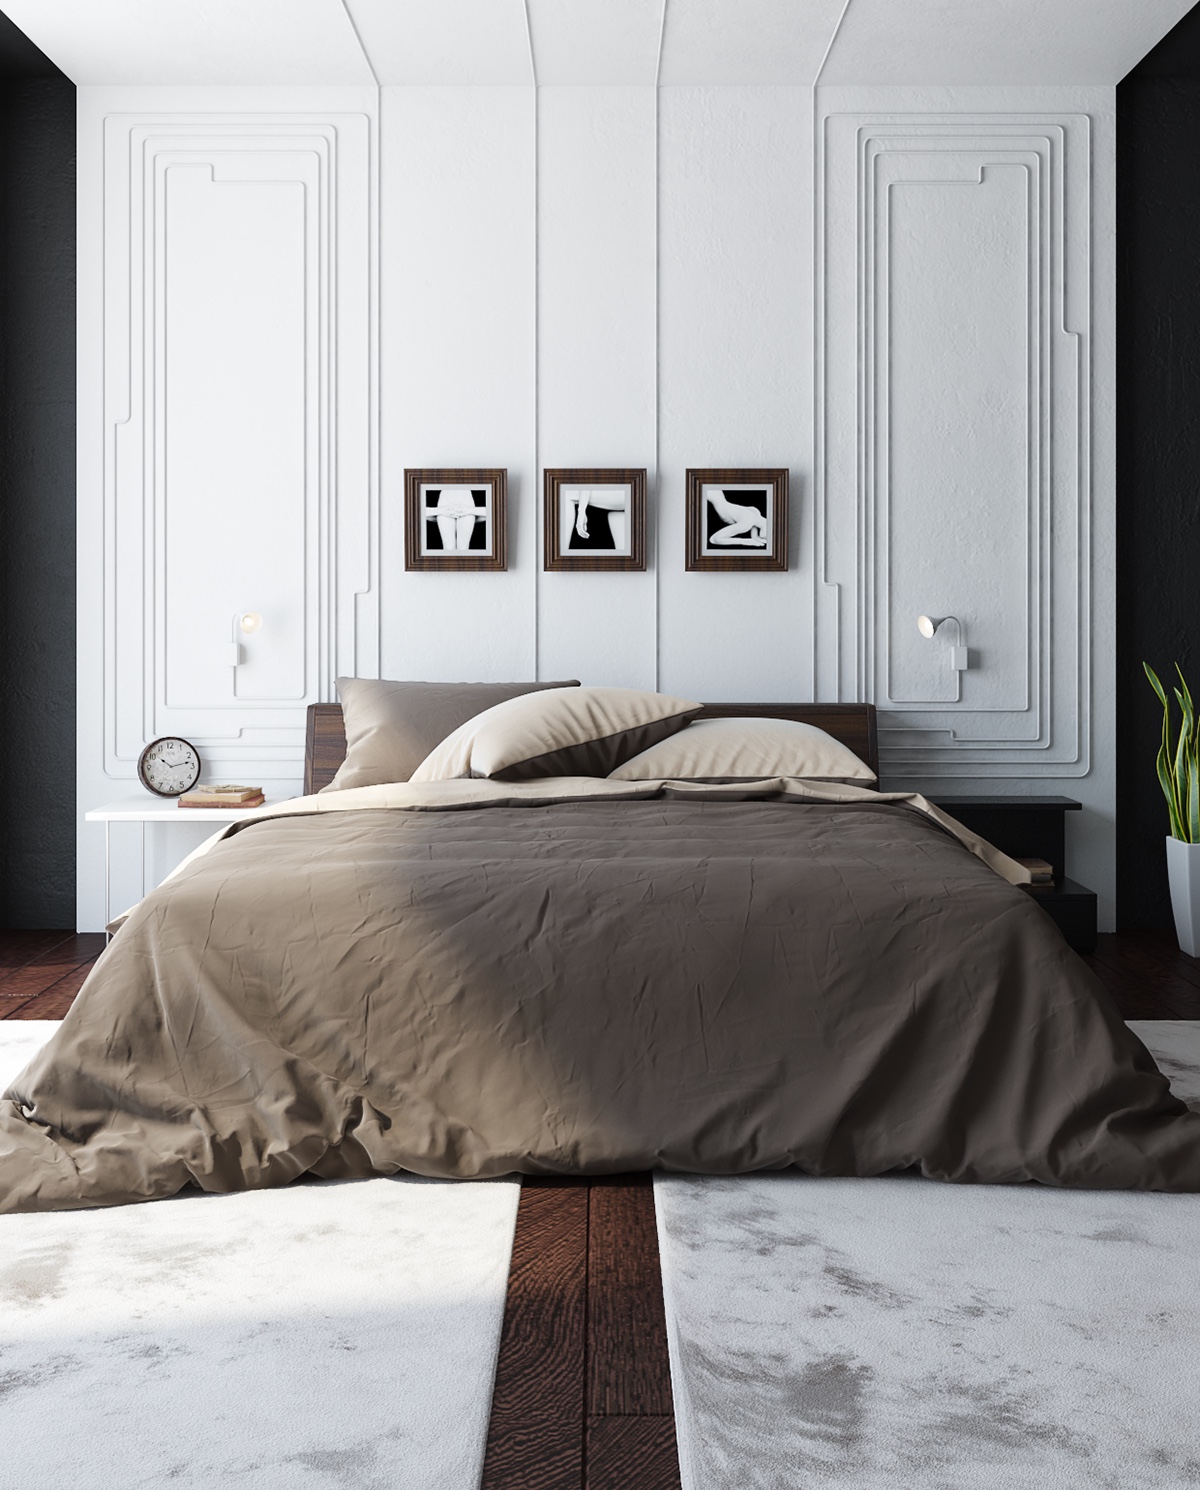 ách ngăn Victorian chính là điểm nhấn cho căn phòng này. Đặc điểm cổ điển của mẫu thiết kế này cùng mảng màu trắng rất hòa hợp với tông nâu trầm của sàn nhà và chiếc giường ngủ cỡ lớn.